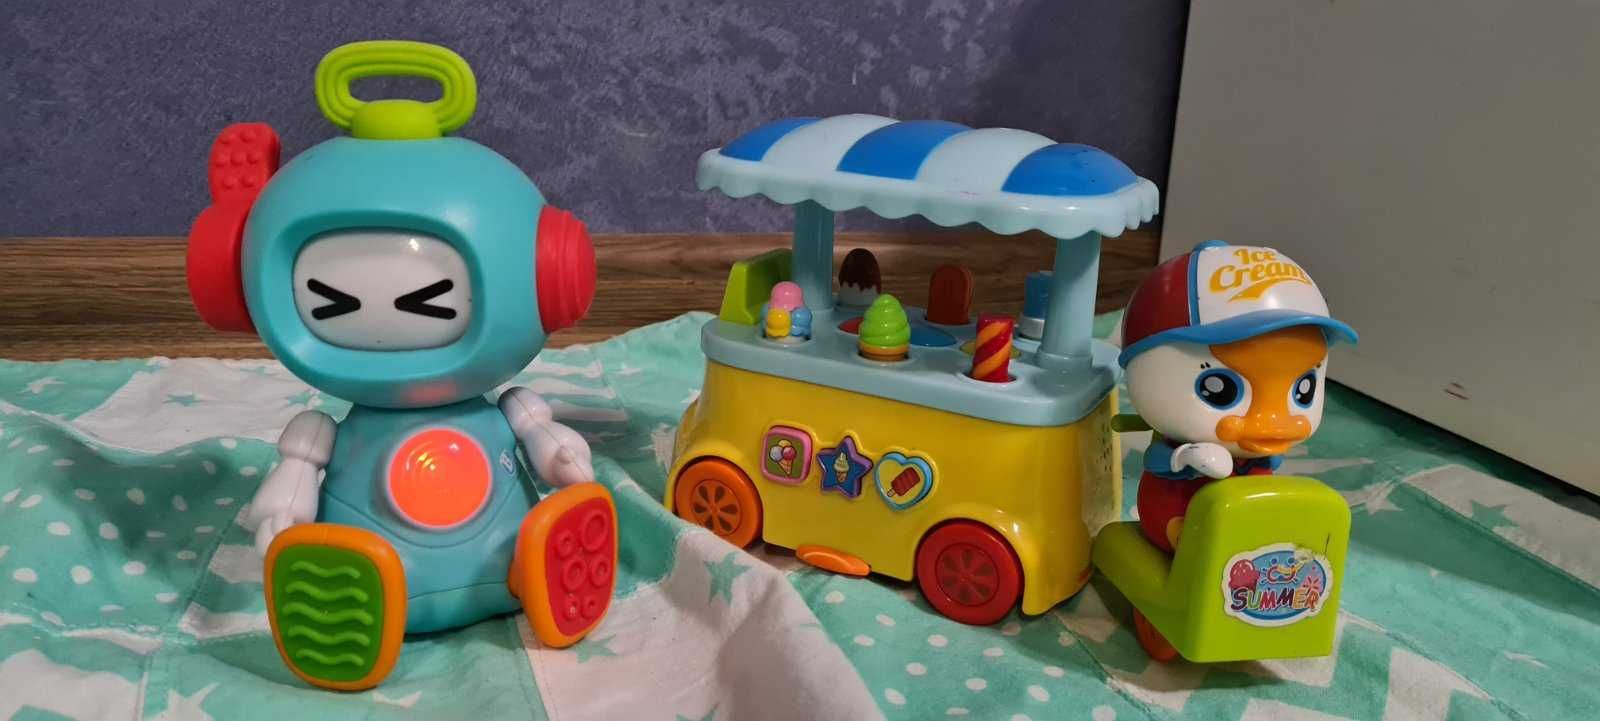 Набор из развивающих игрушек Sensory робот  и Huile Toys мороженщик